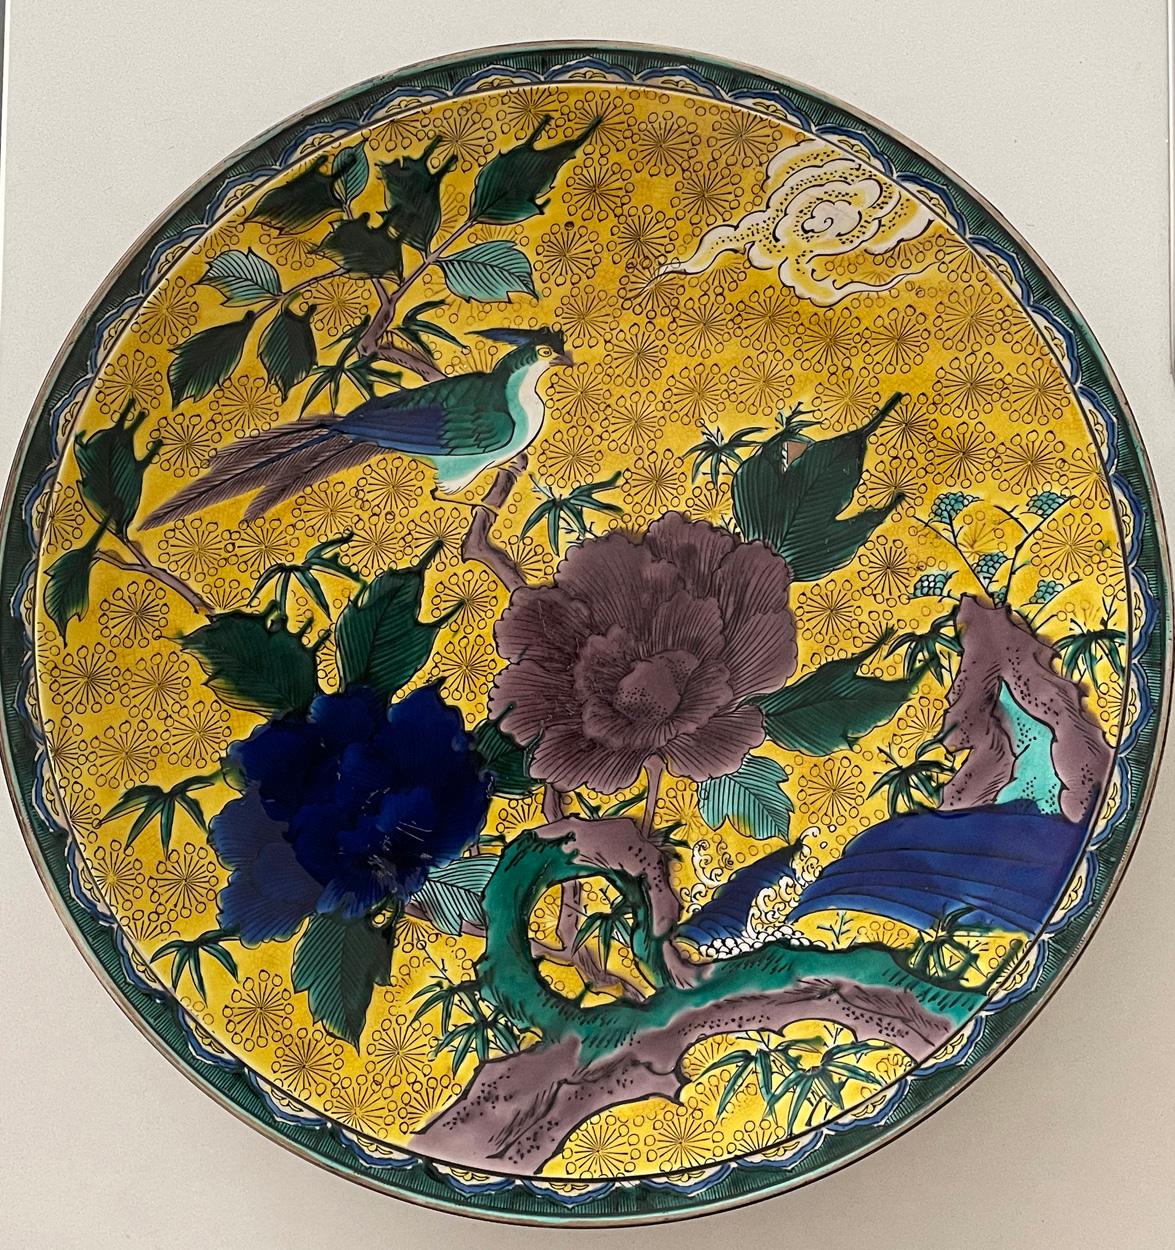 Rare chargeur en céramique japonaise à fond jaune de 15,5 pouces de diamètre.

Décorée sur une base jaune d'un oiseau, de feuillages et de fleurs dans des tons jaunes, bleus, bruns et verts.

Signé sur la base avec le cachet du studio.

En